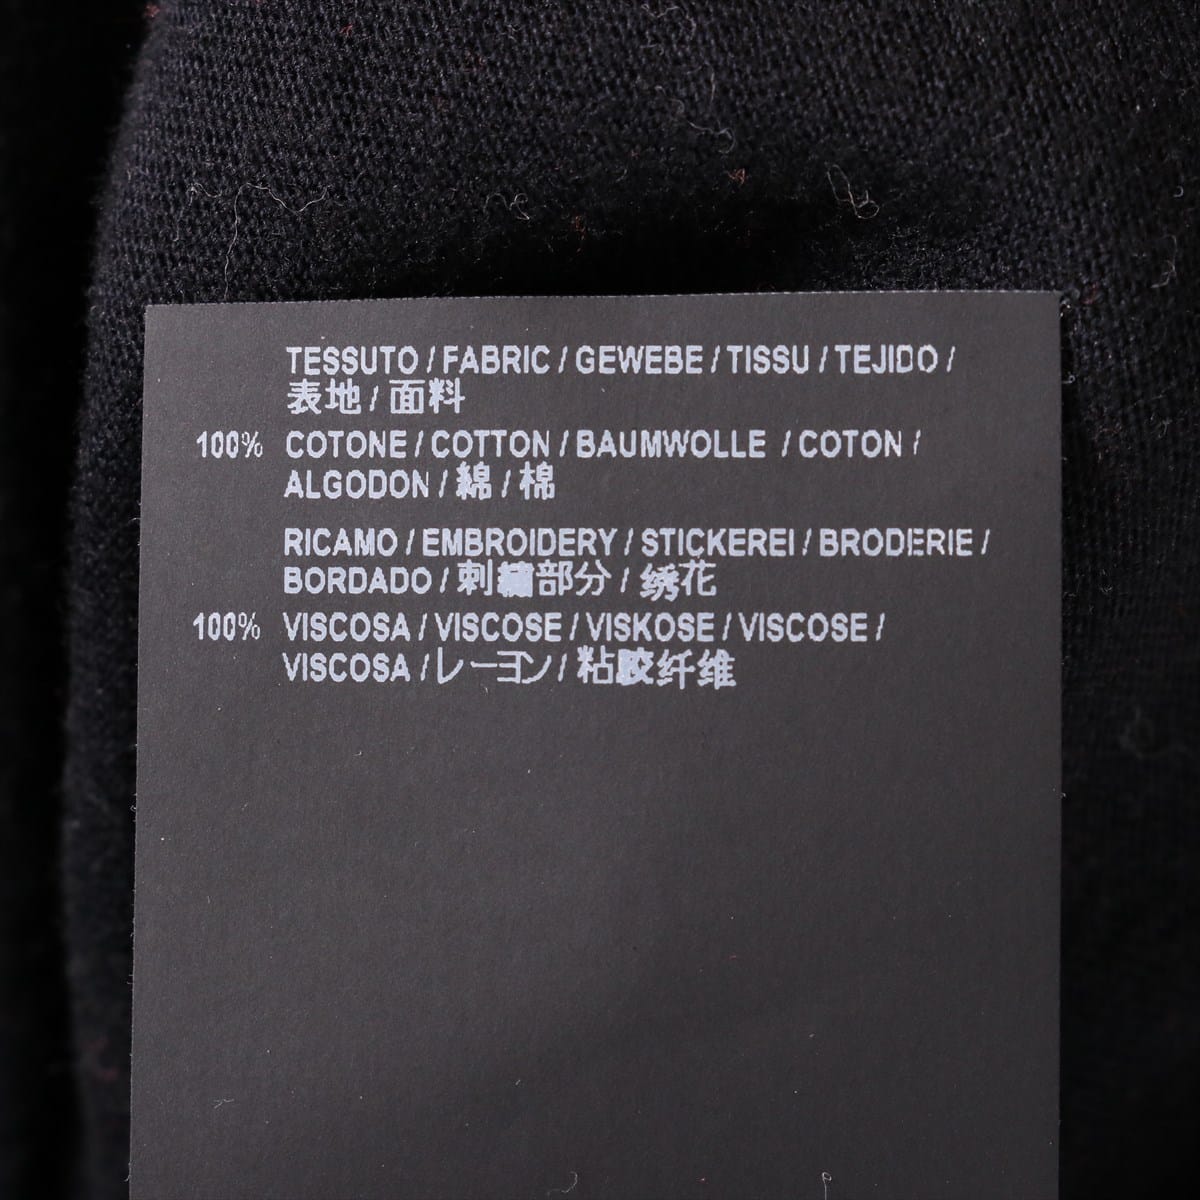 バレンシアガ コットン Tシャツ 10 キッズ ブラック ロゴ刺繍